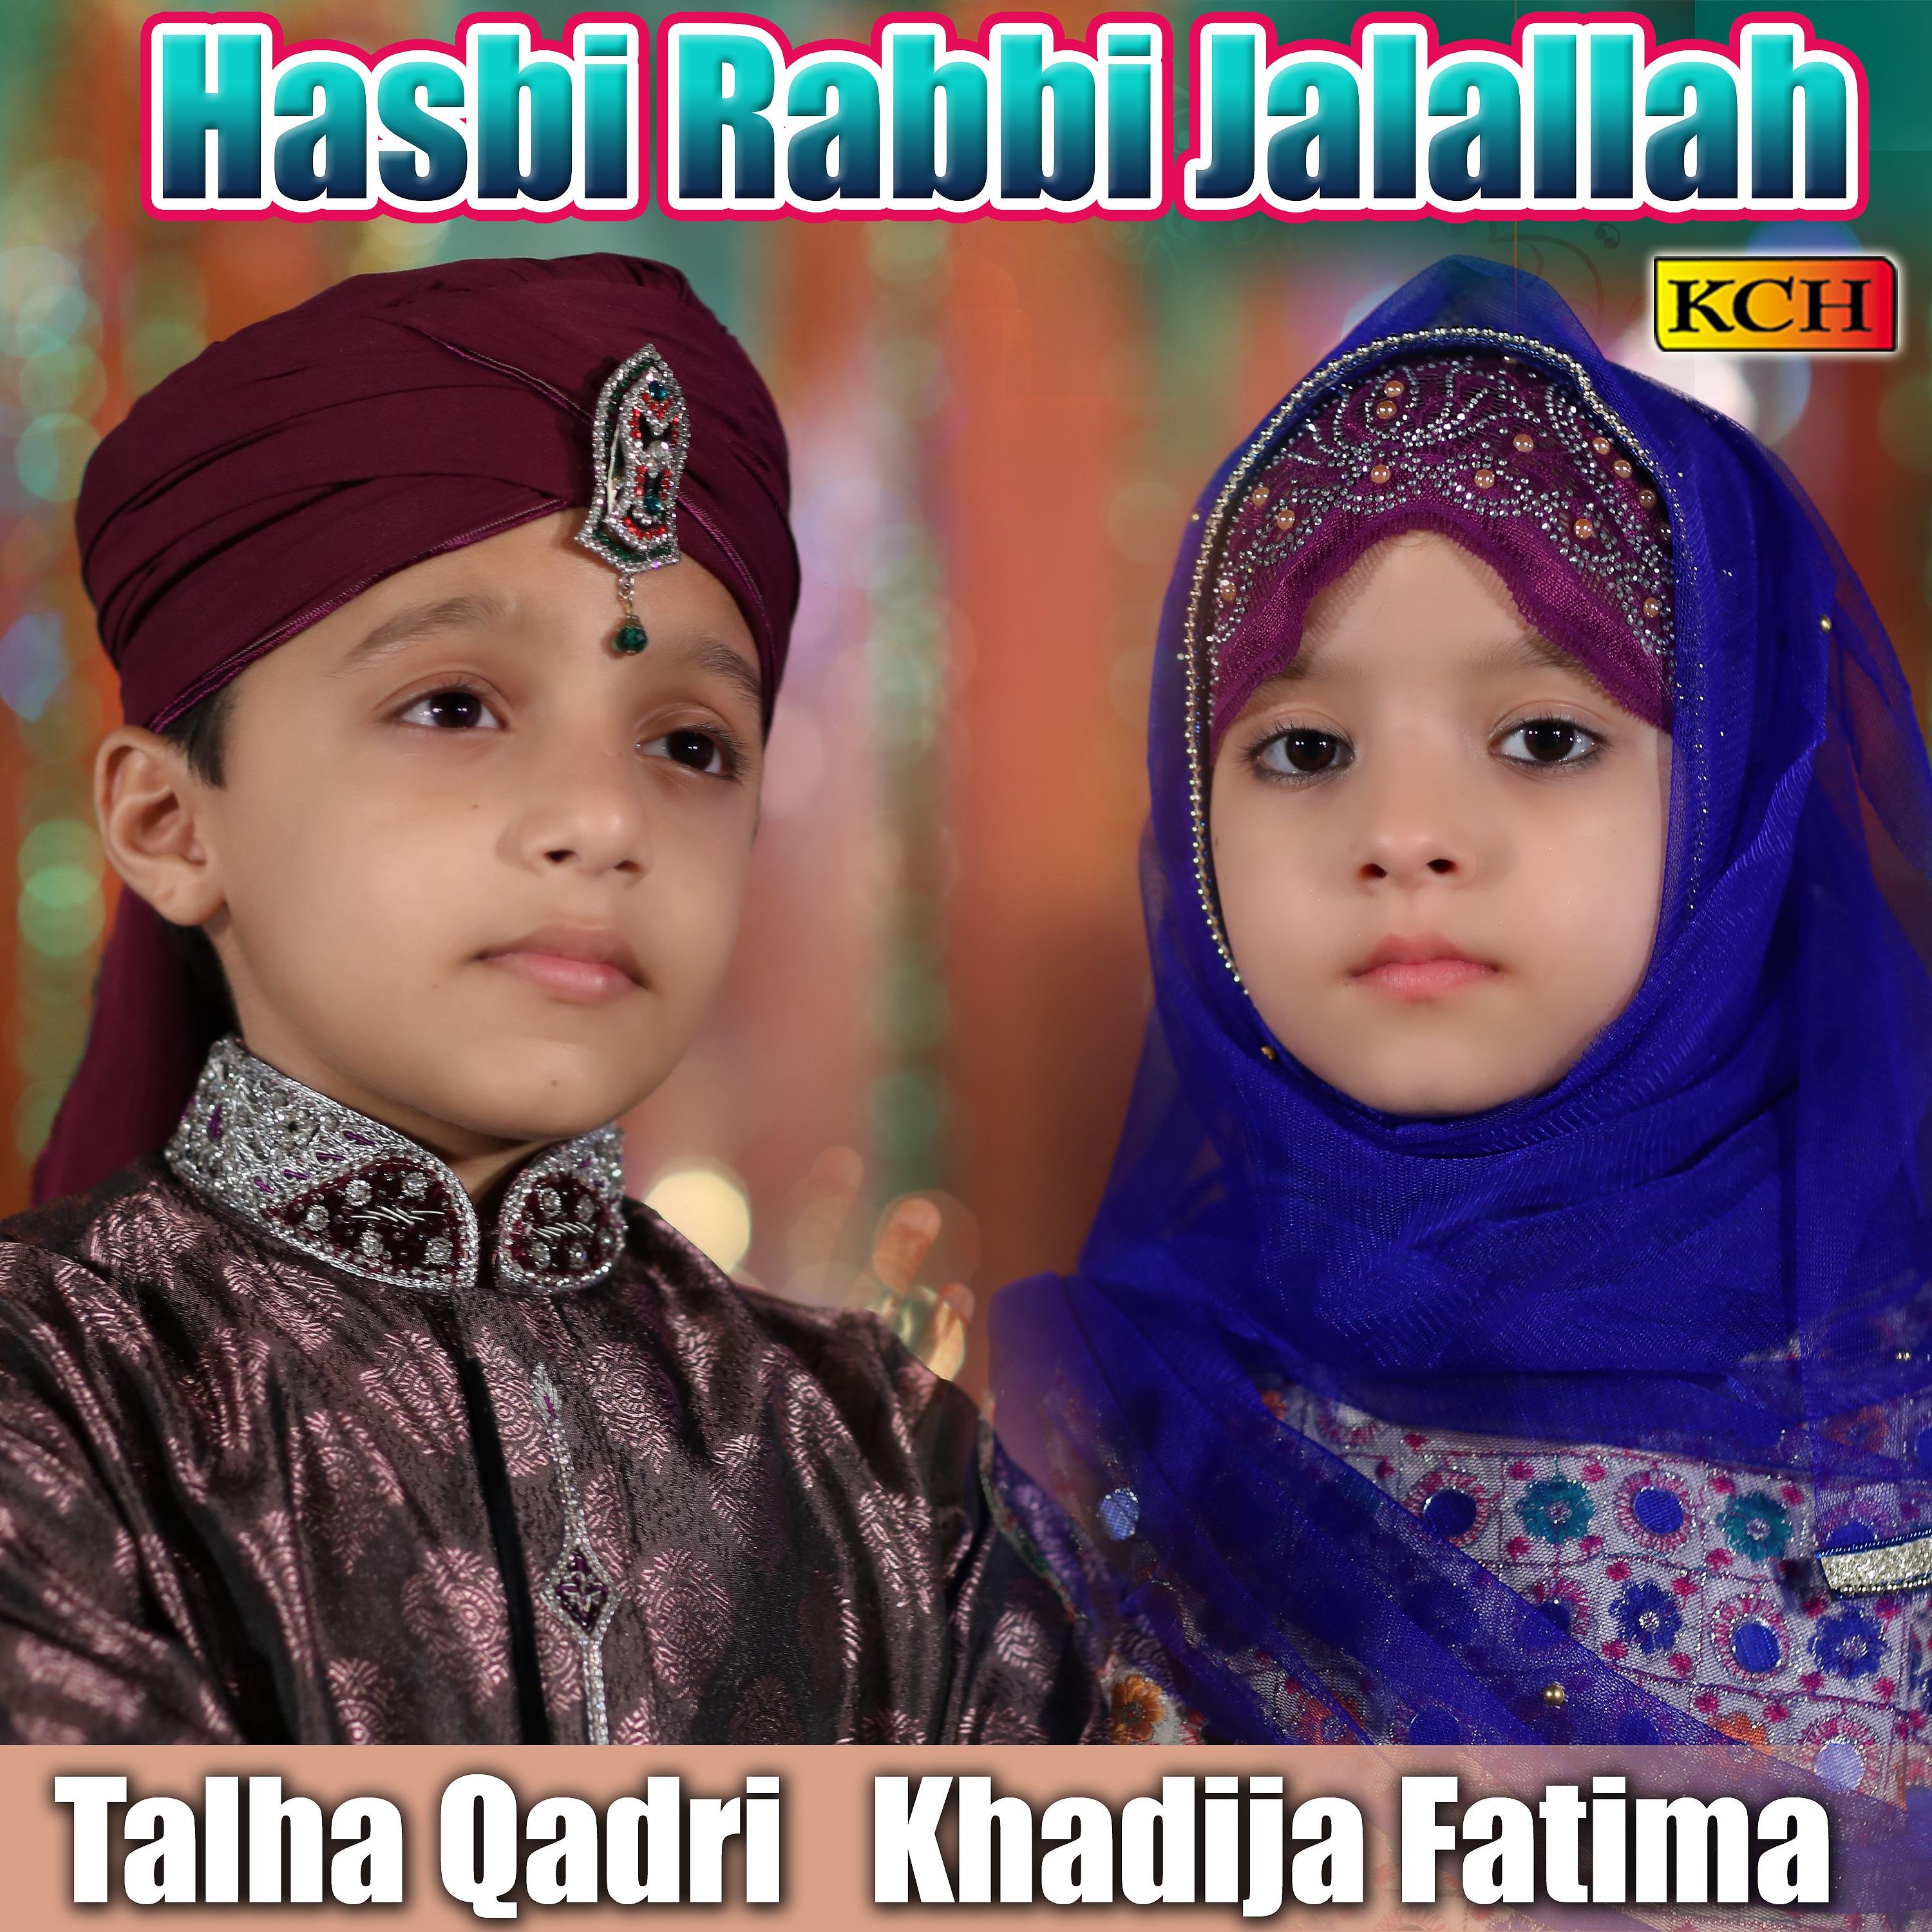 Постер альбома Hasbi Rabbi Jalallah